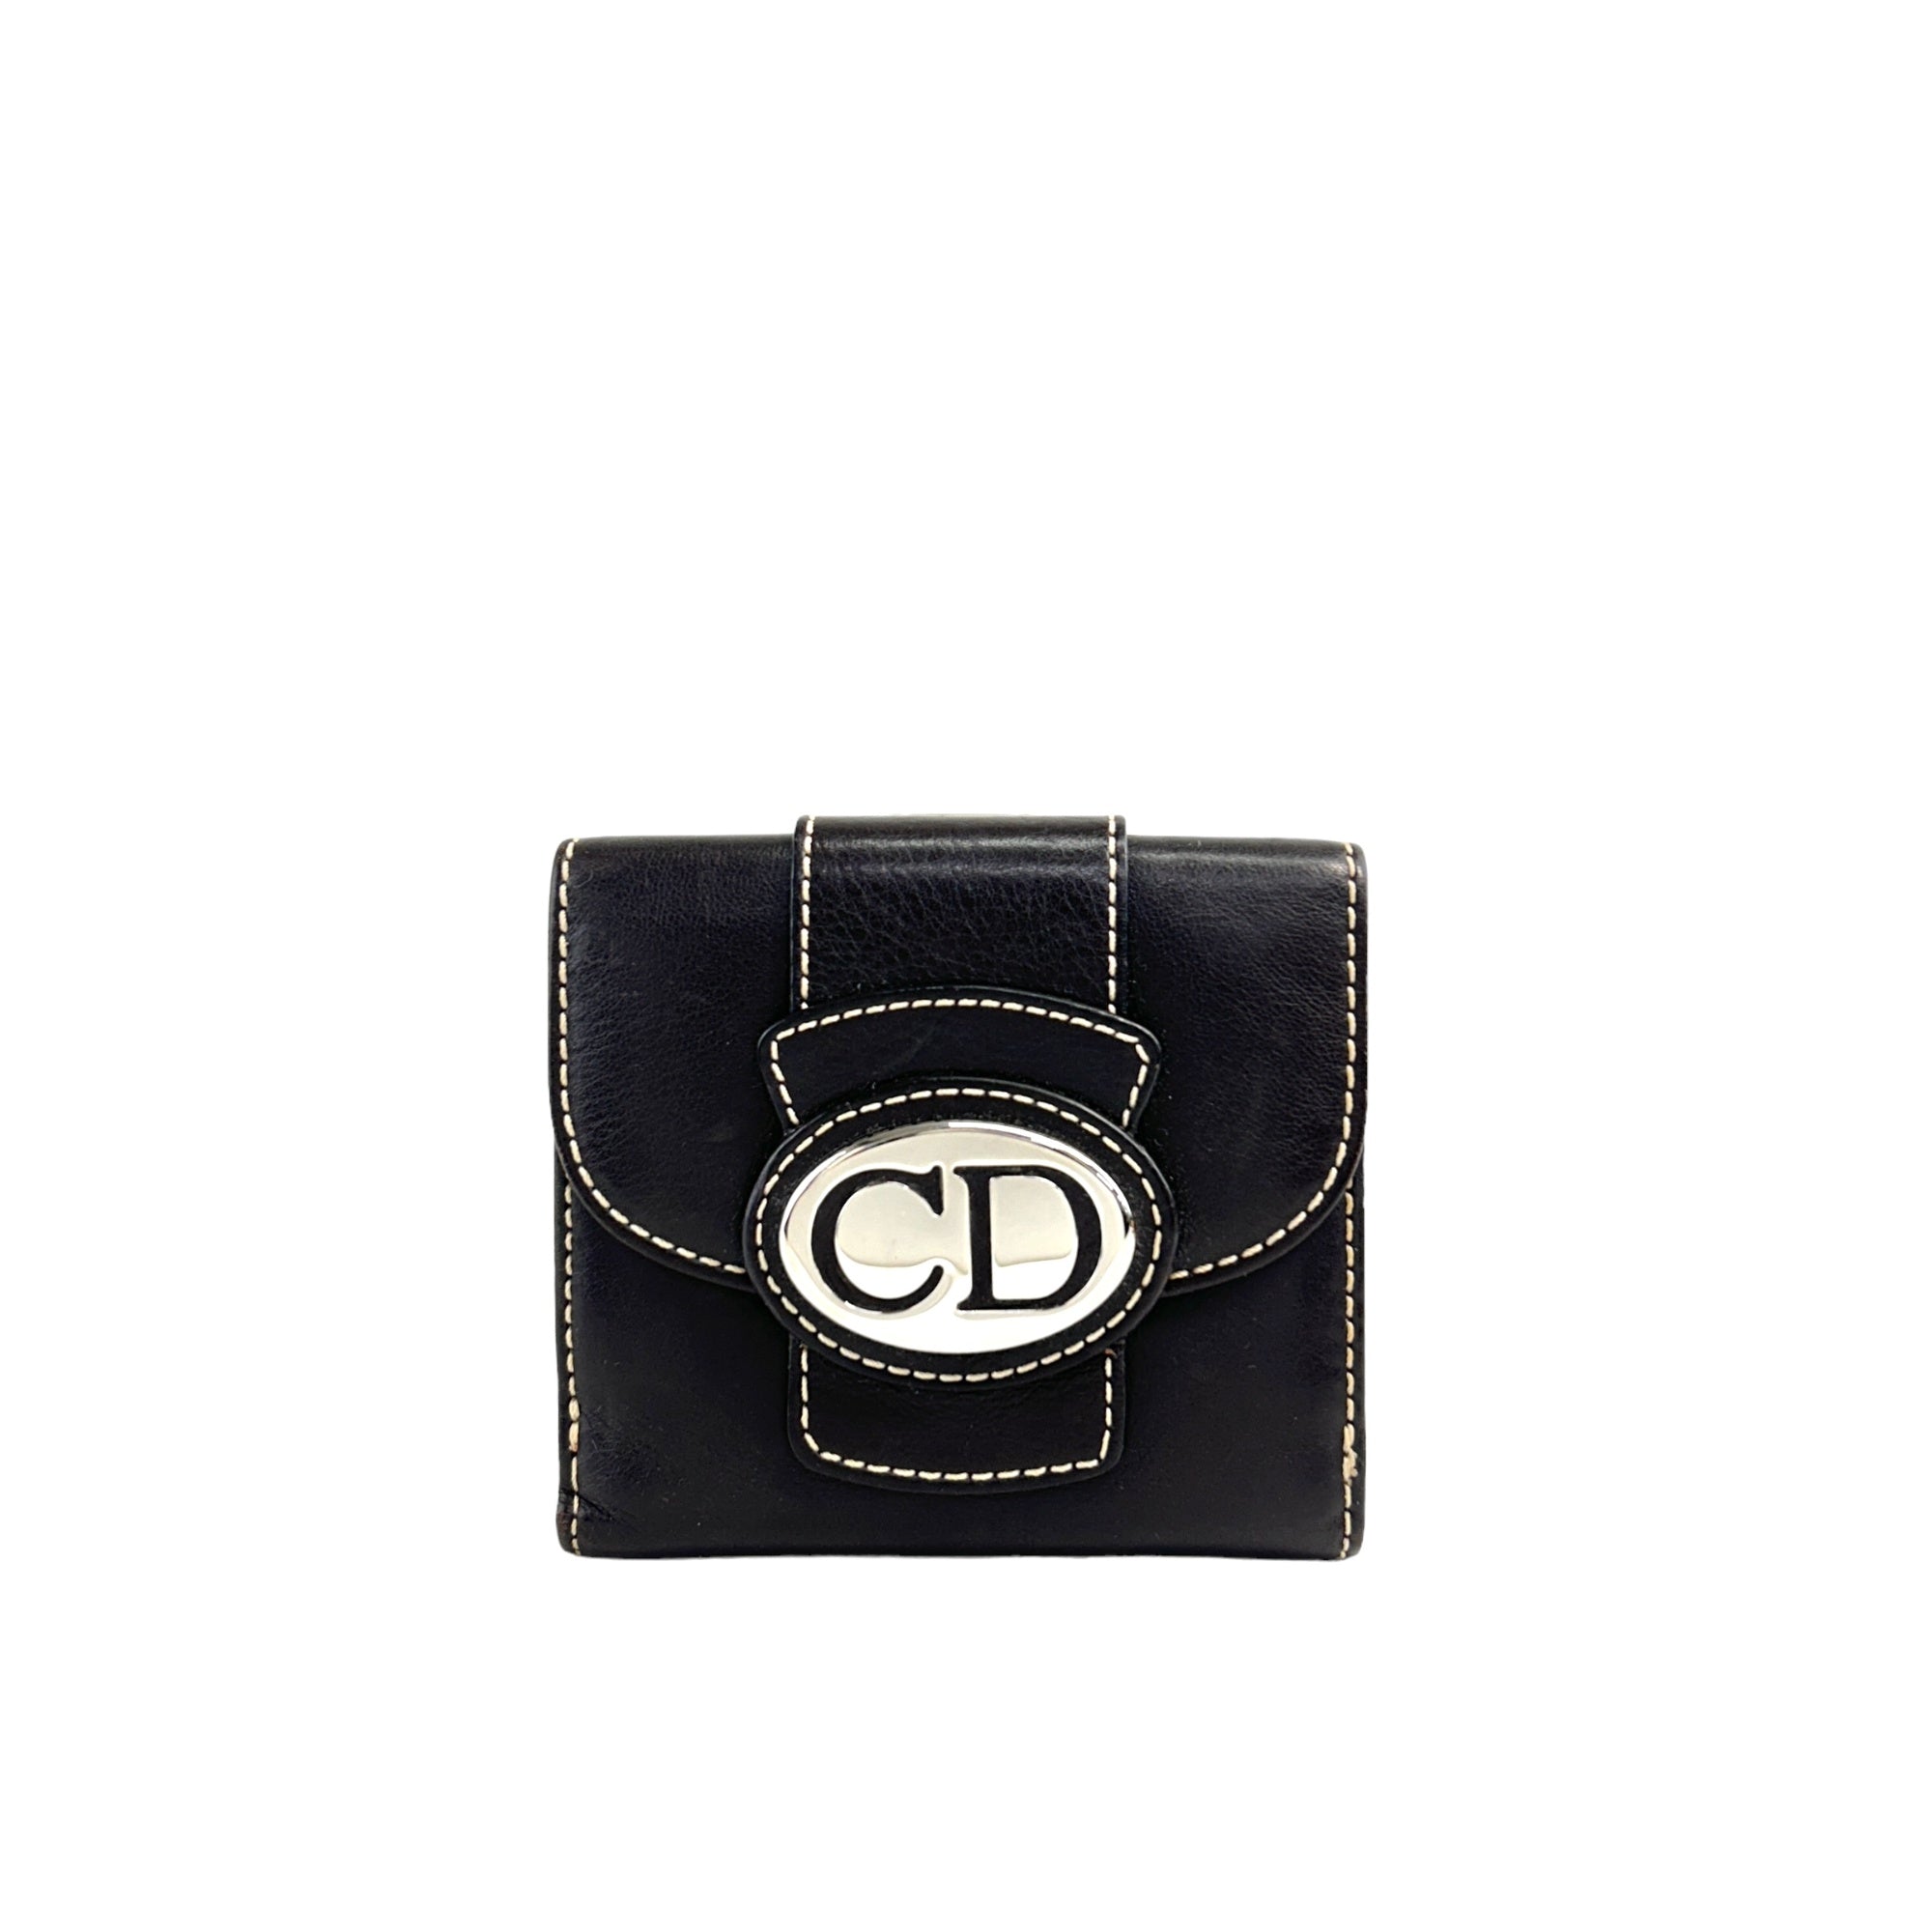 Christian Dior CD Logo Leather Folded Wallet Brown Vintage 8jdhim 